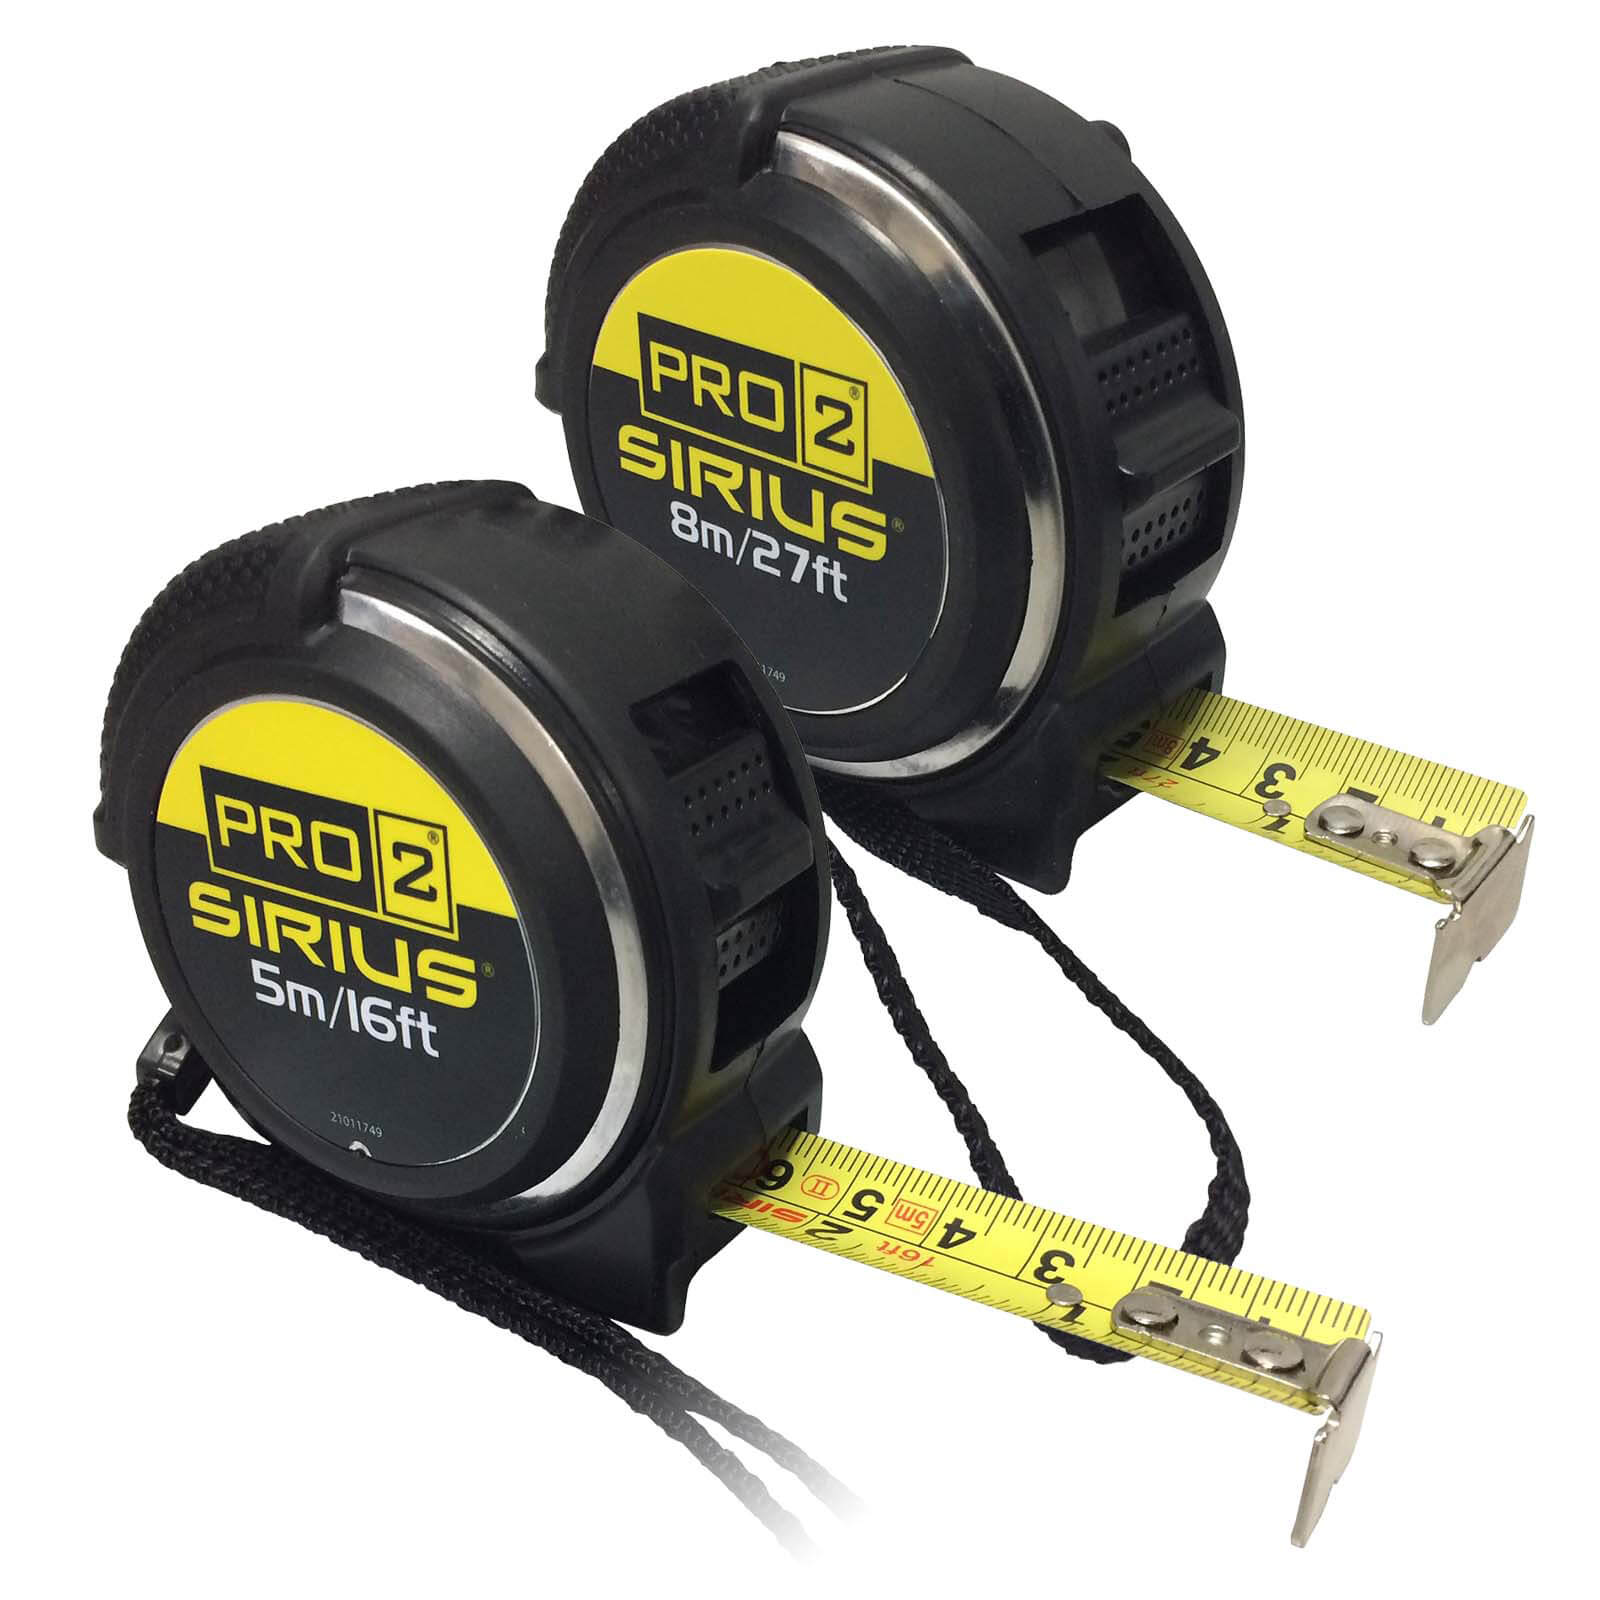 Photos - Tape Measure and Surveyor Tape Sirius 2 Piece Pro 2 Tape Measure Set SRSKIT16 